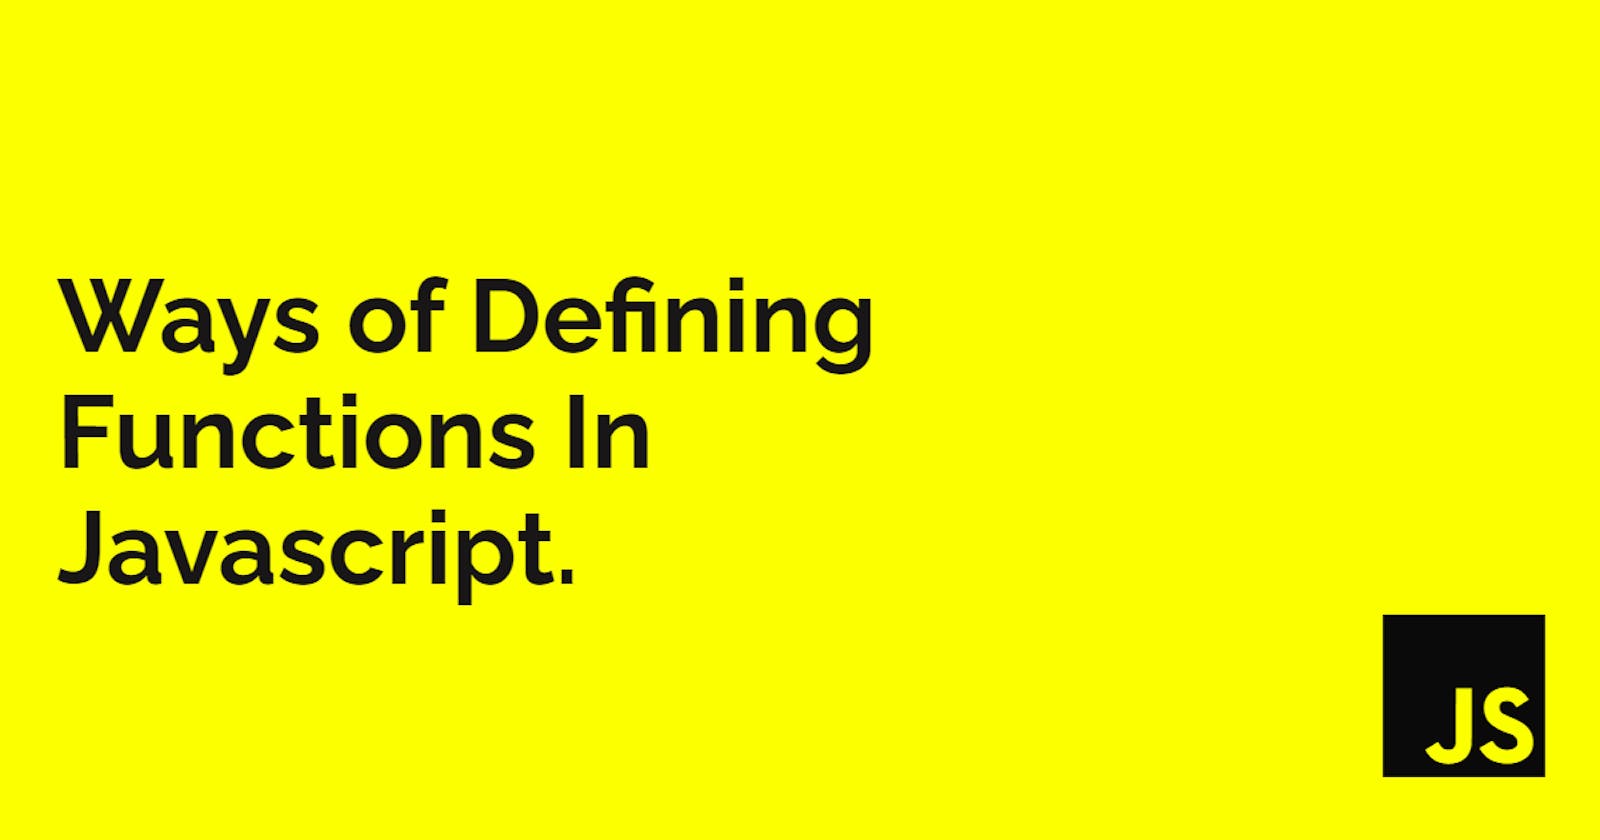 Ways of Defining Functions In Javascript.